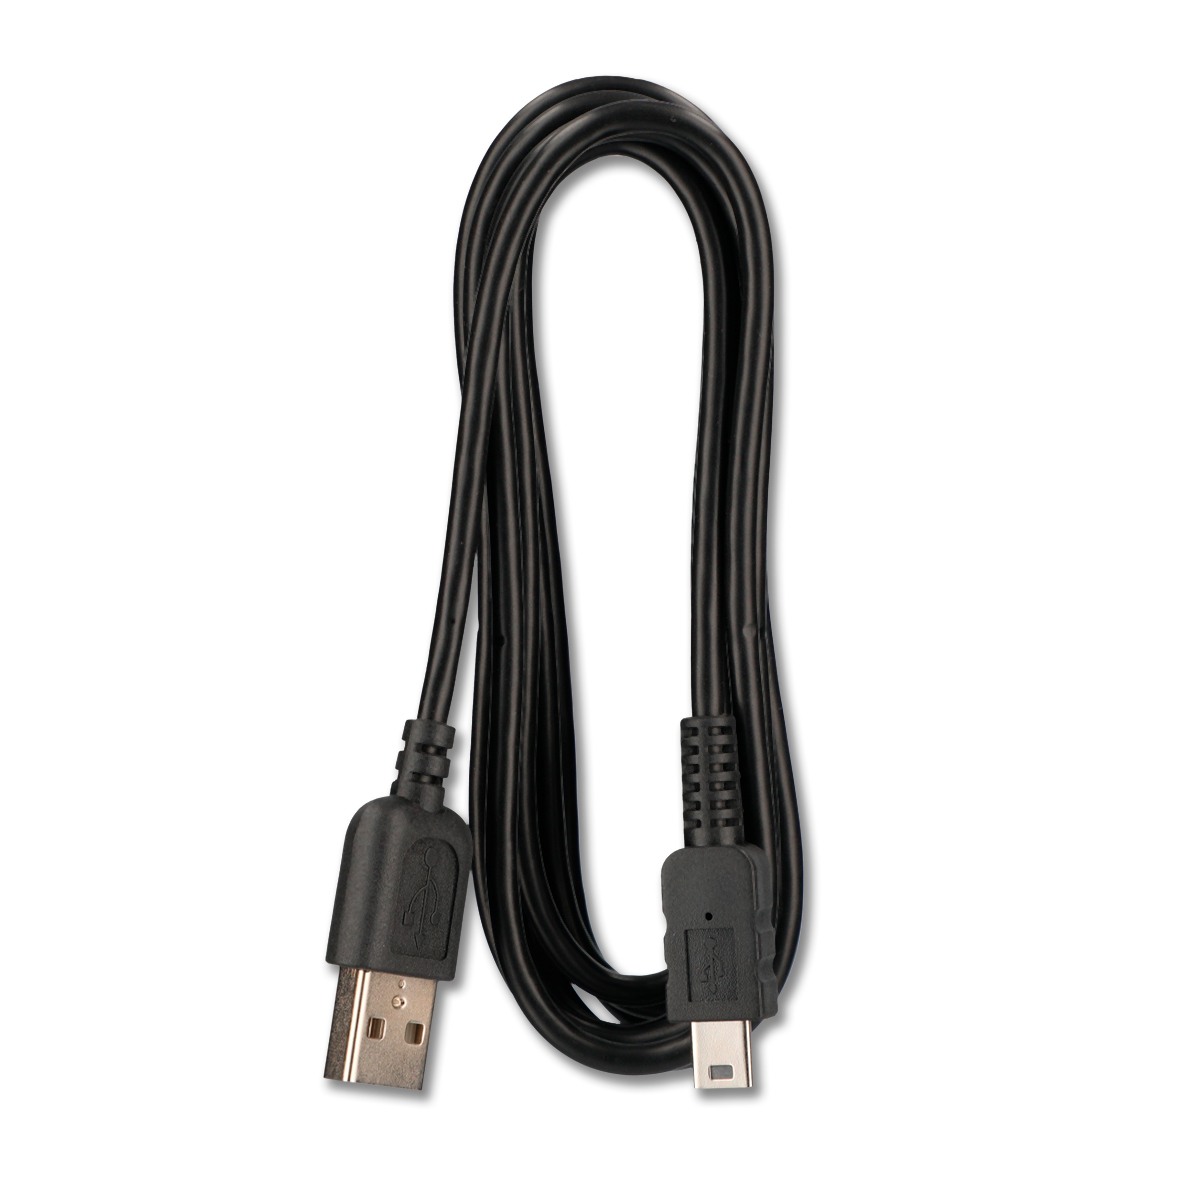 Cable de Carga USB Tipo C RadioShack 1 m Plástico, Cables USB, Cables de  audio y video, Cómputo y Accesorios, Todas, Categoría